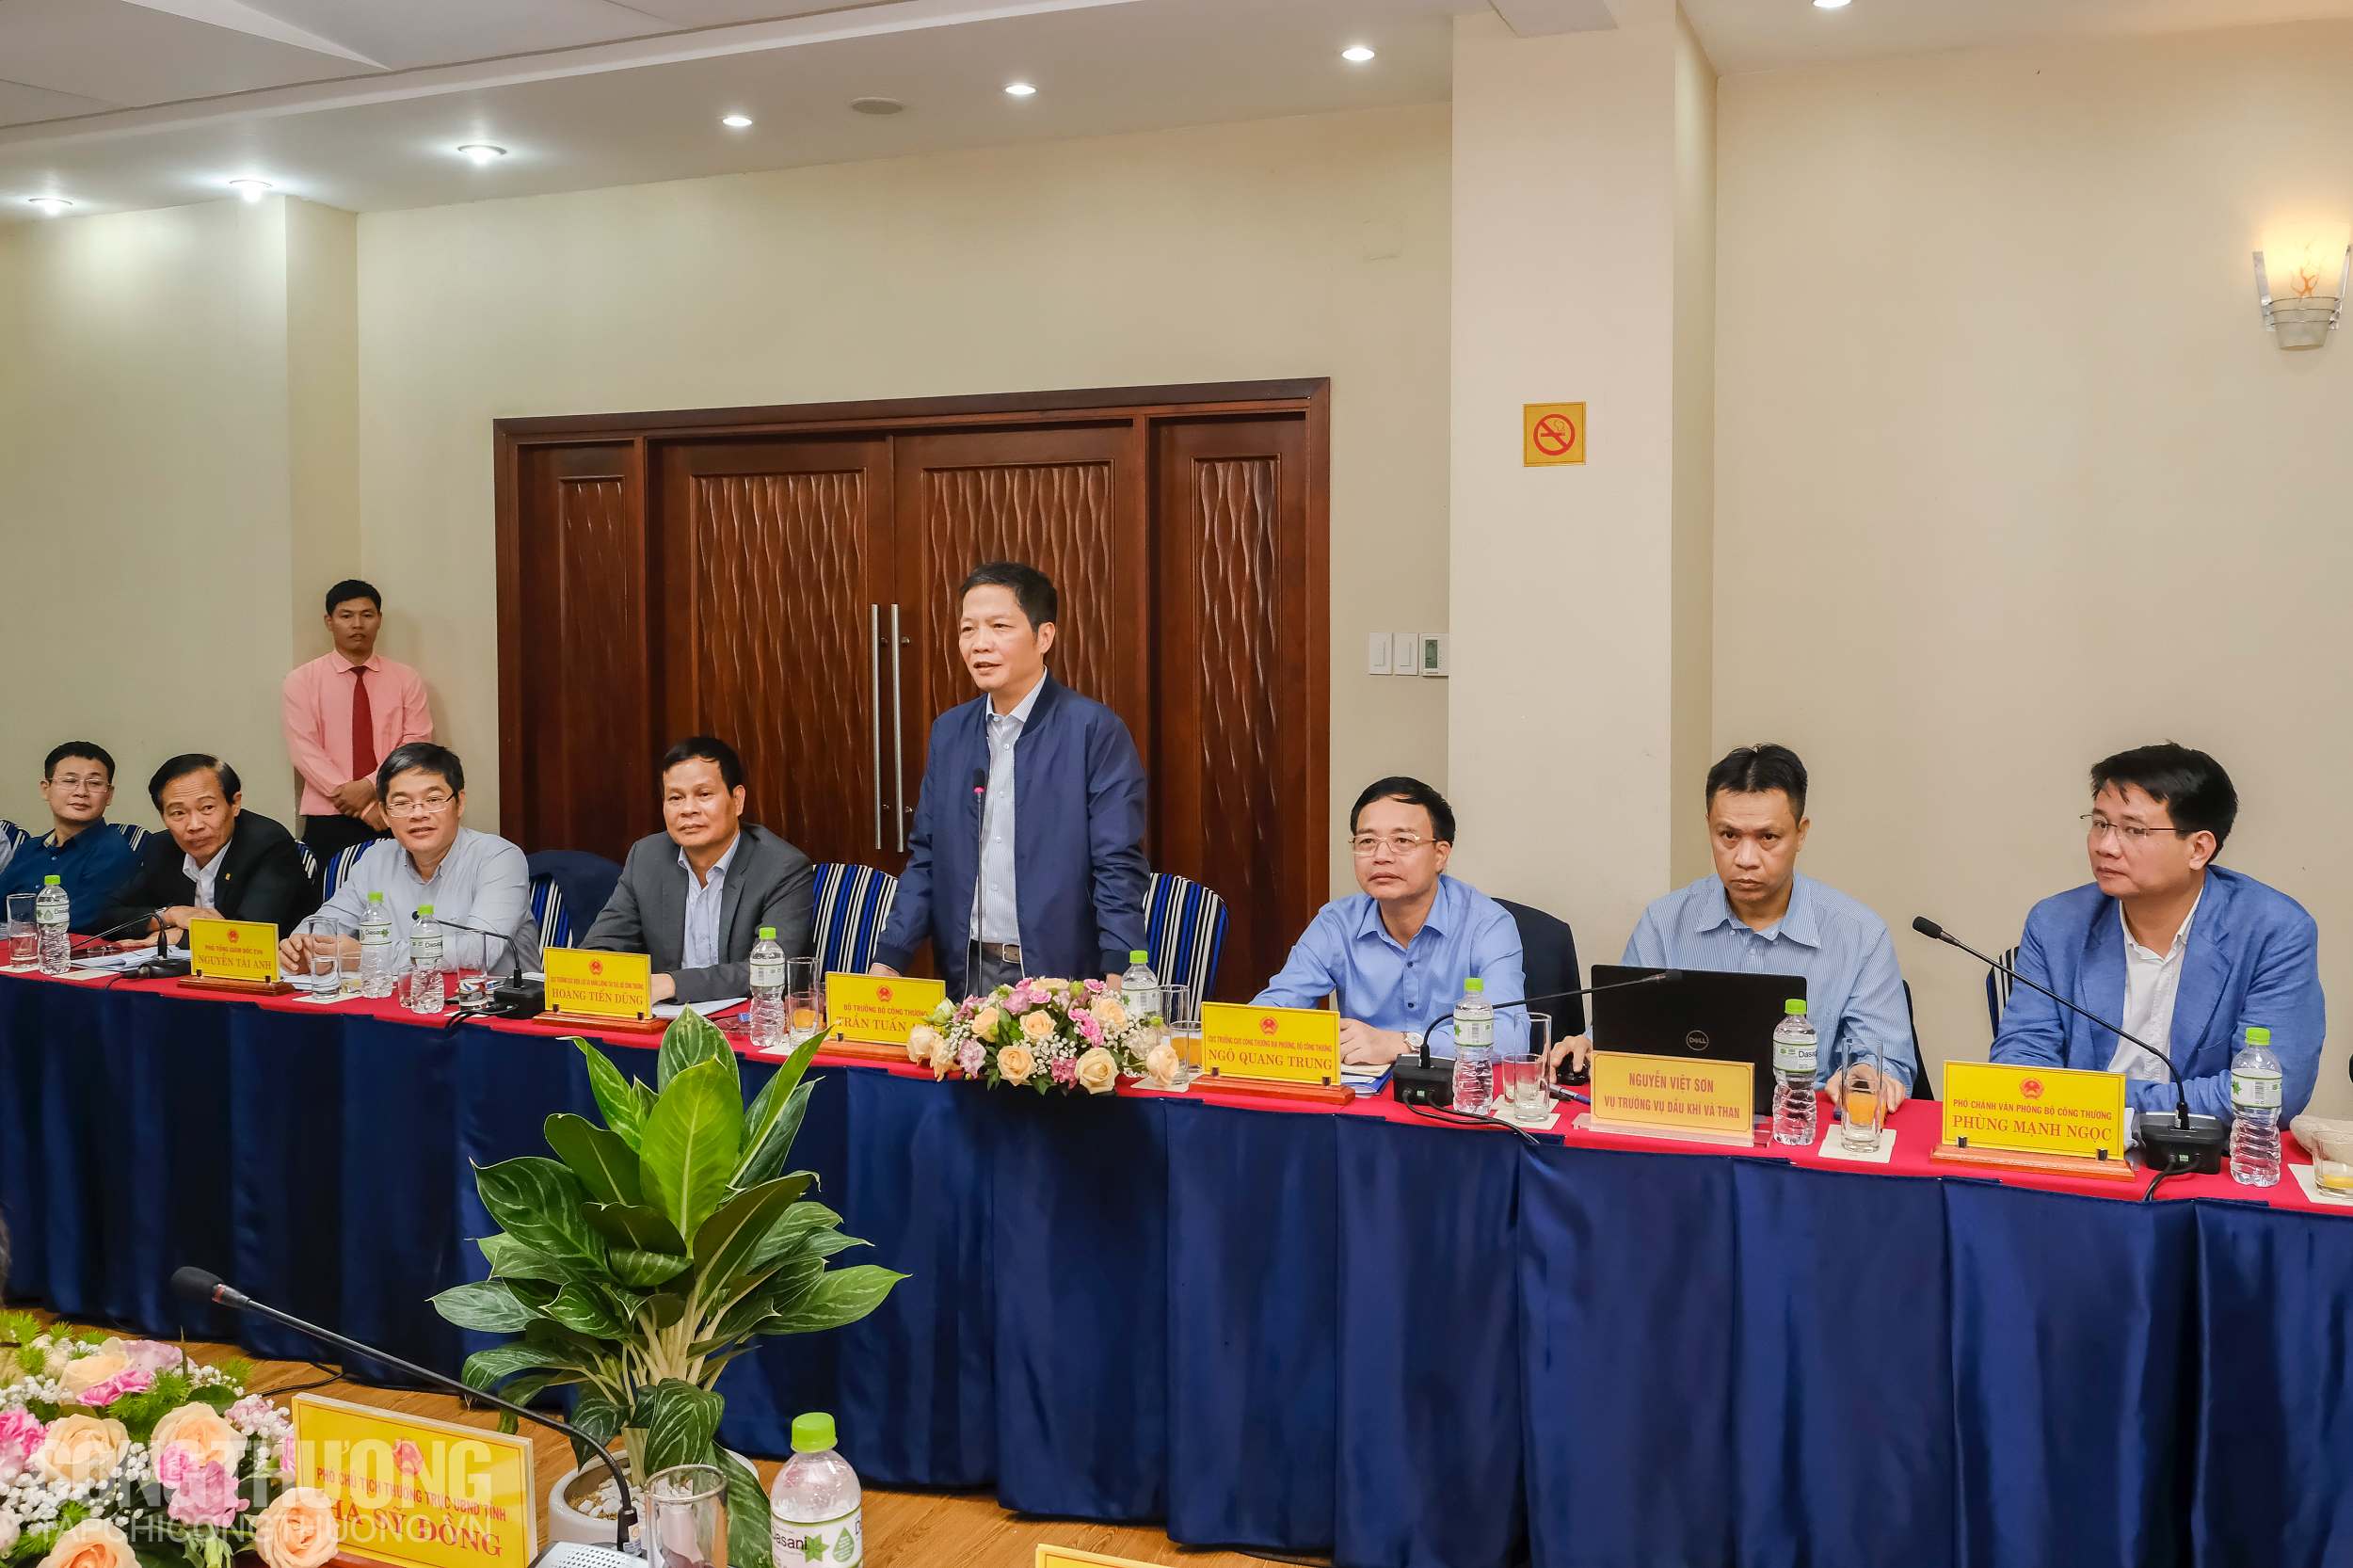 Các đơn vị thuộc Bộ Công Thương cũng khẳng định sẽ phối hợp chặt chẽ với lãnh đạo tỉnh Quảng Trị để giúp các nhà đầu tư kịp hưởng ưu đãi từ Quyết định 39